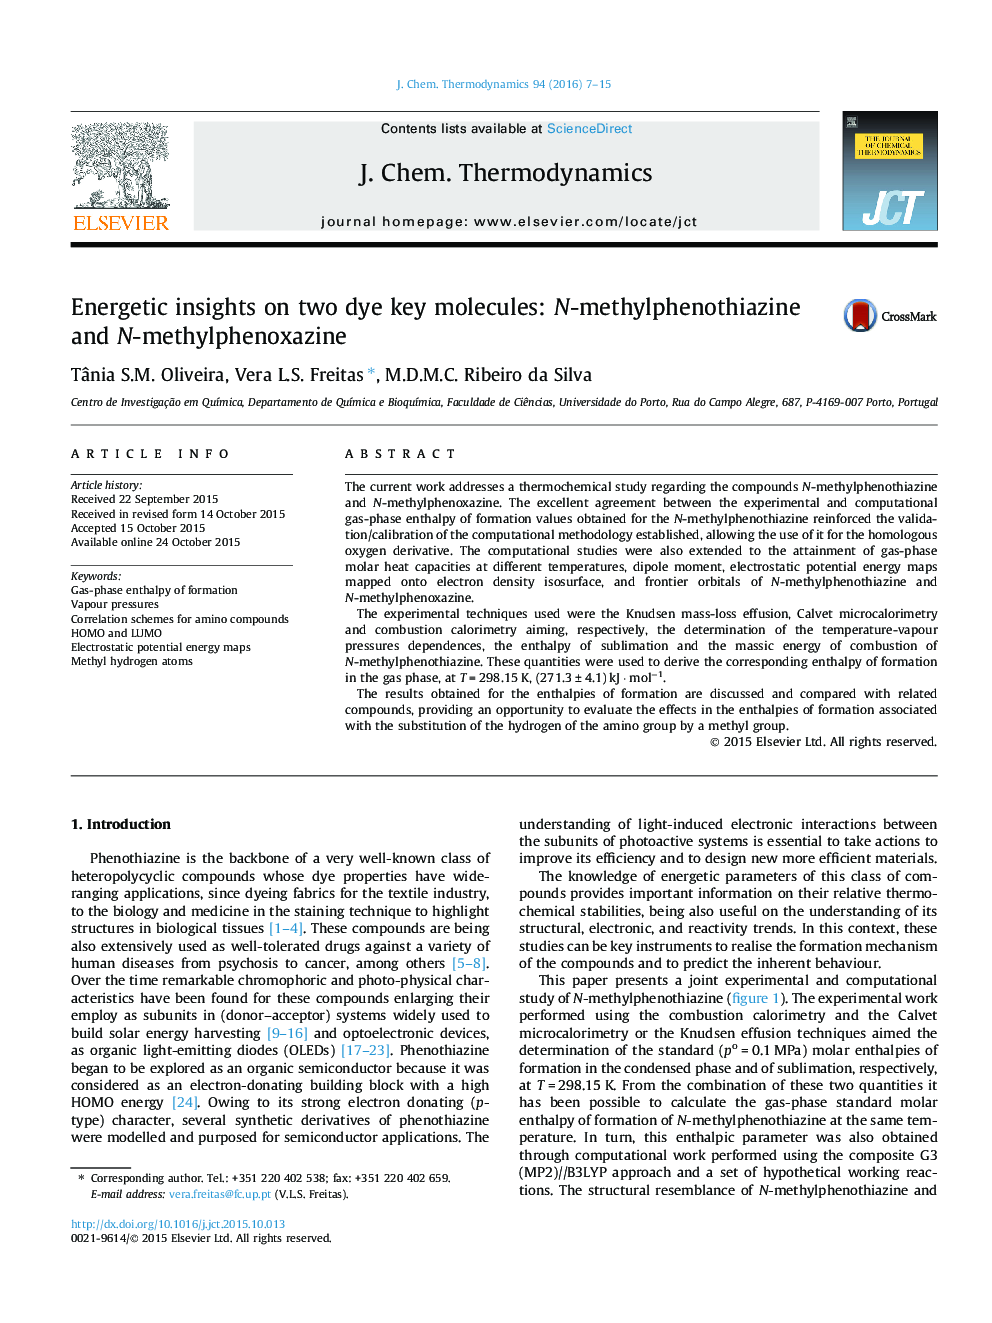 Energetic insights on two dye key molecules: N-methylphenothiazine and N-methylphenoxazine